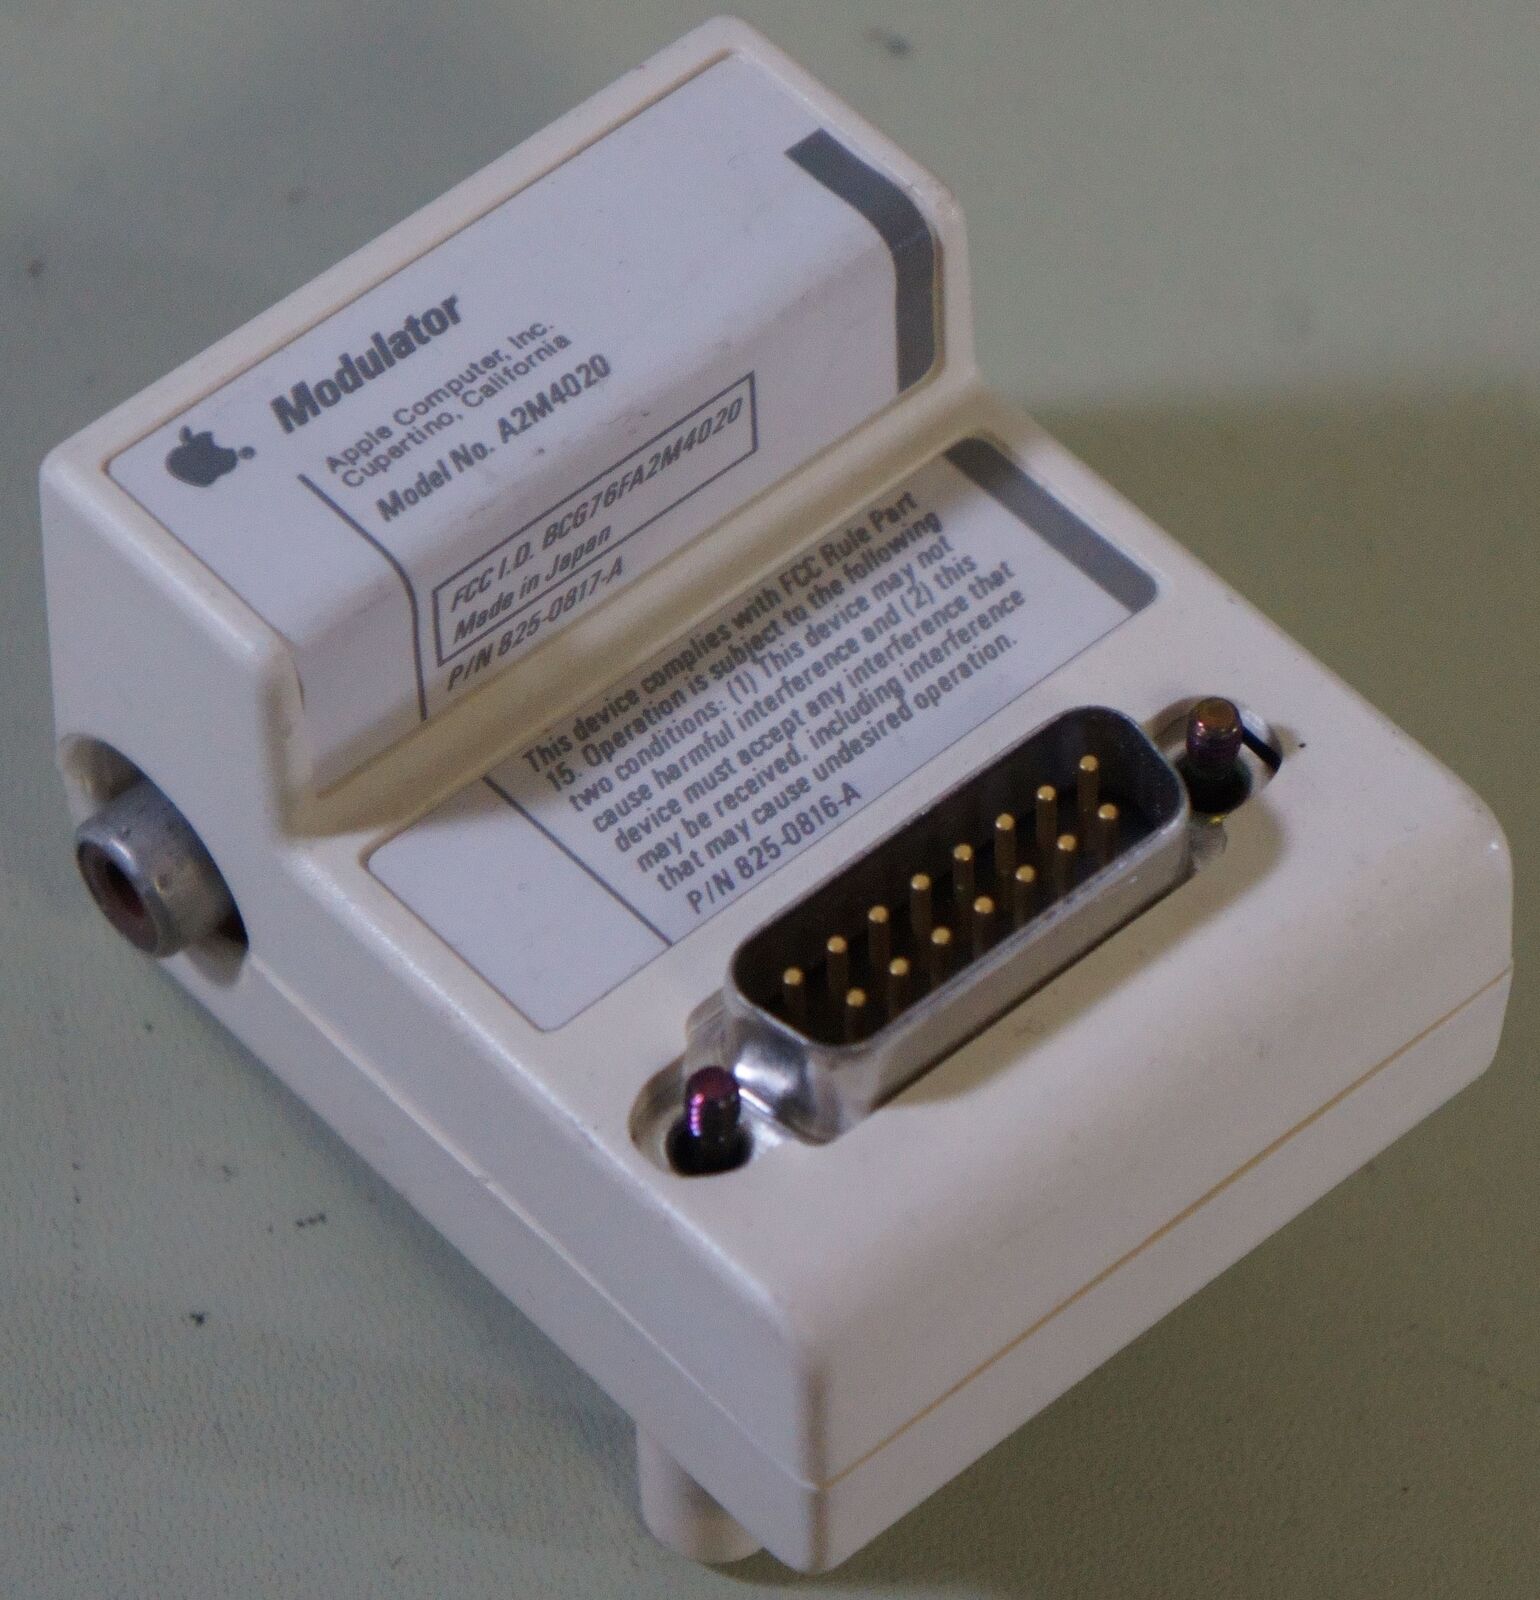 Apple A2M4020 Modulator , 825-0817-A